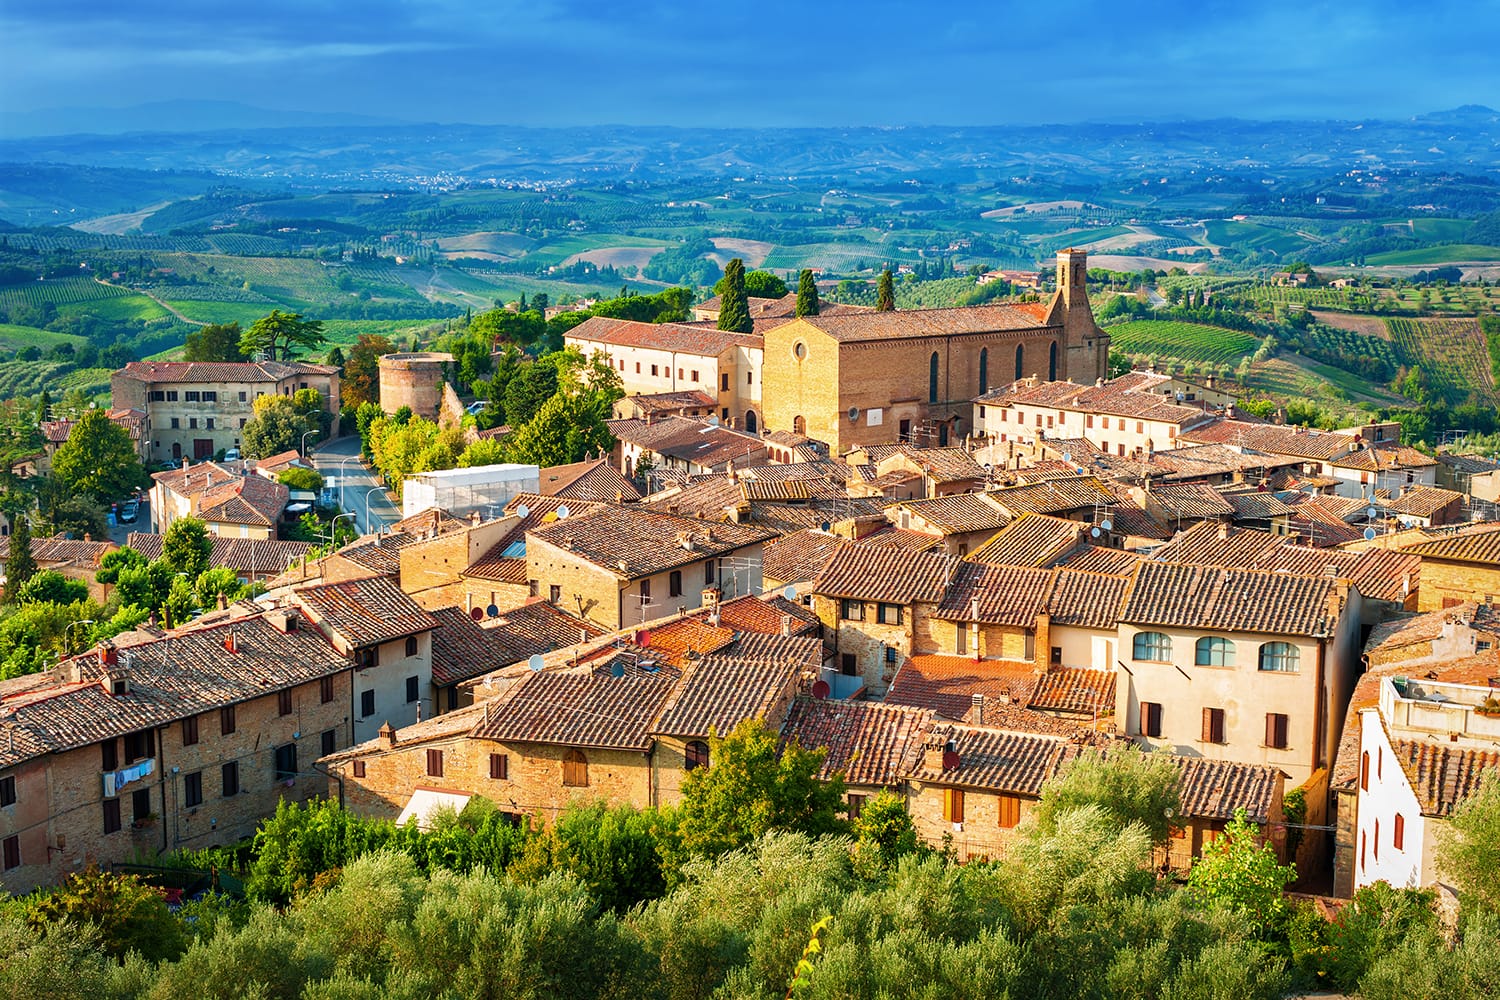 San Gimignano medieval town, Tuscany Italy.